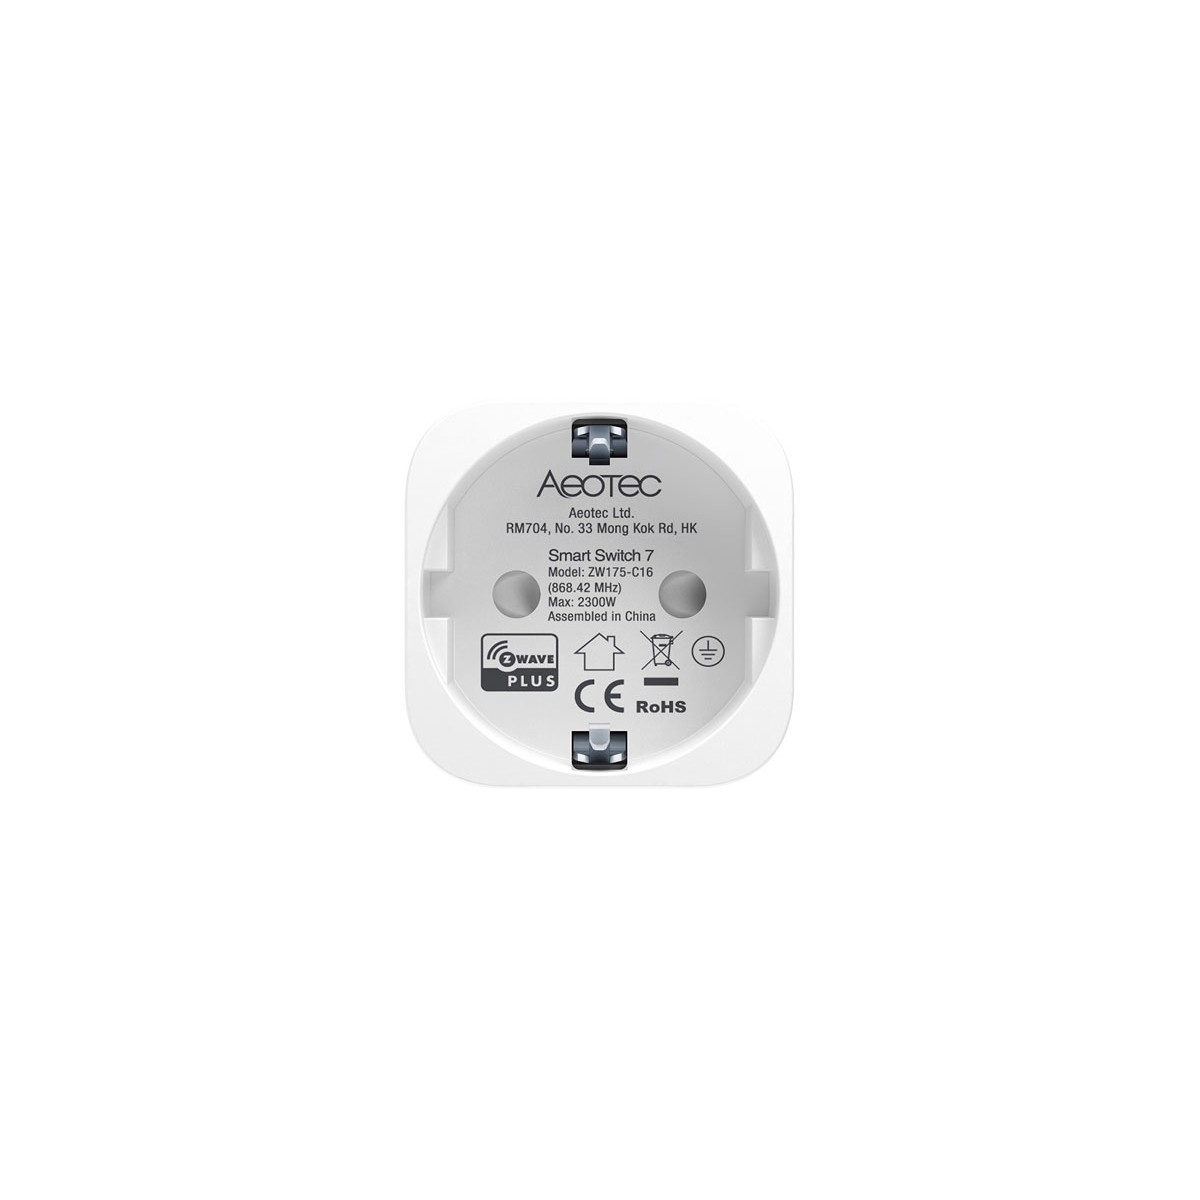 Weiß Schutzkontaktstecker, Z-Wave-Anschlusssteckdose Aeotec AEOTEC Verbrauchsmessung - mit